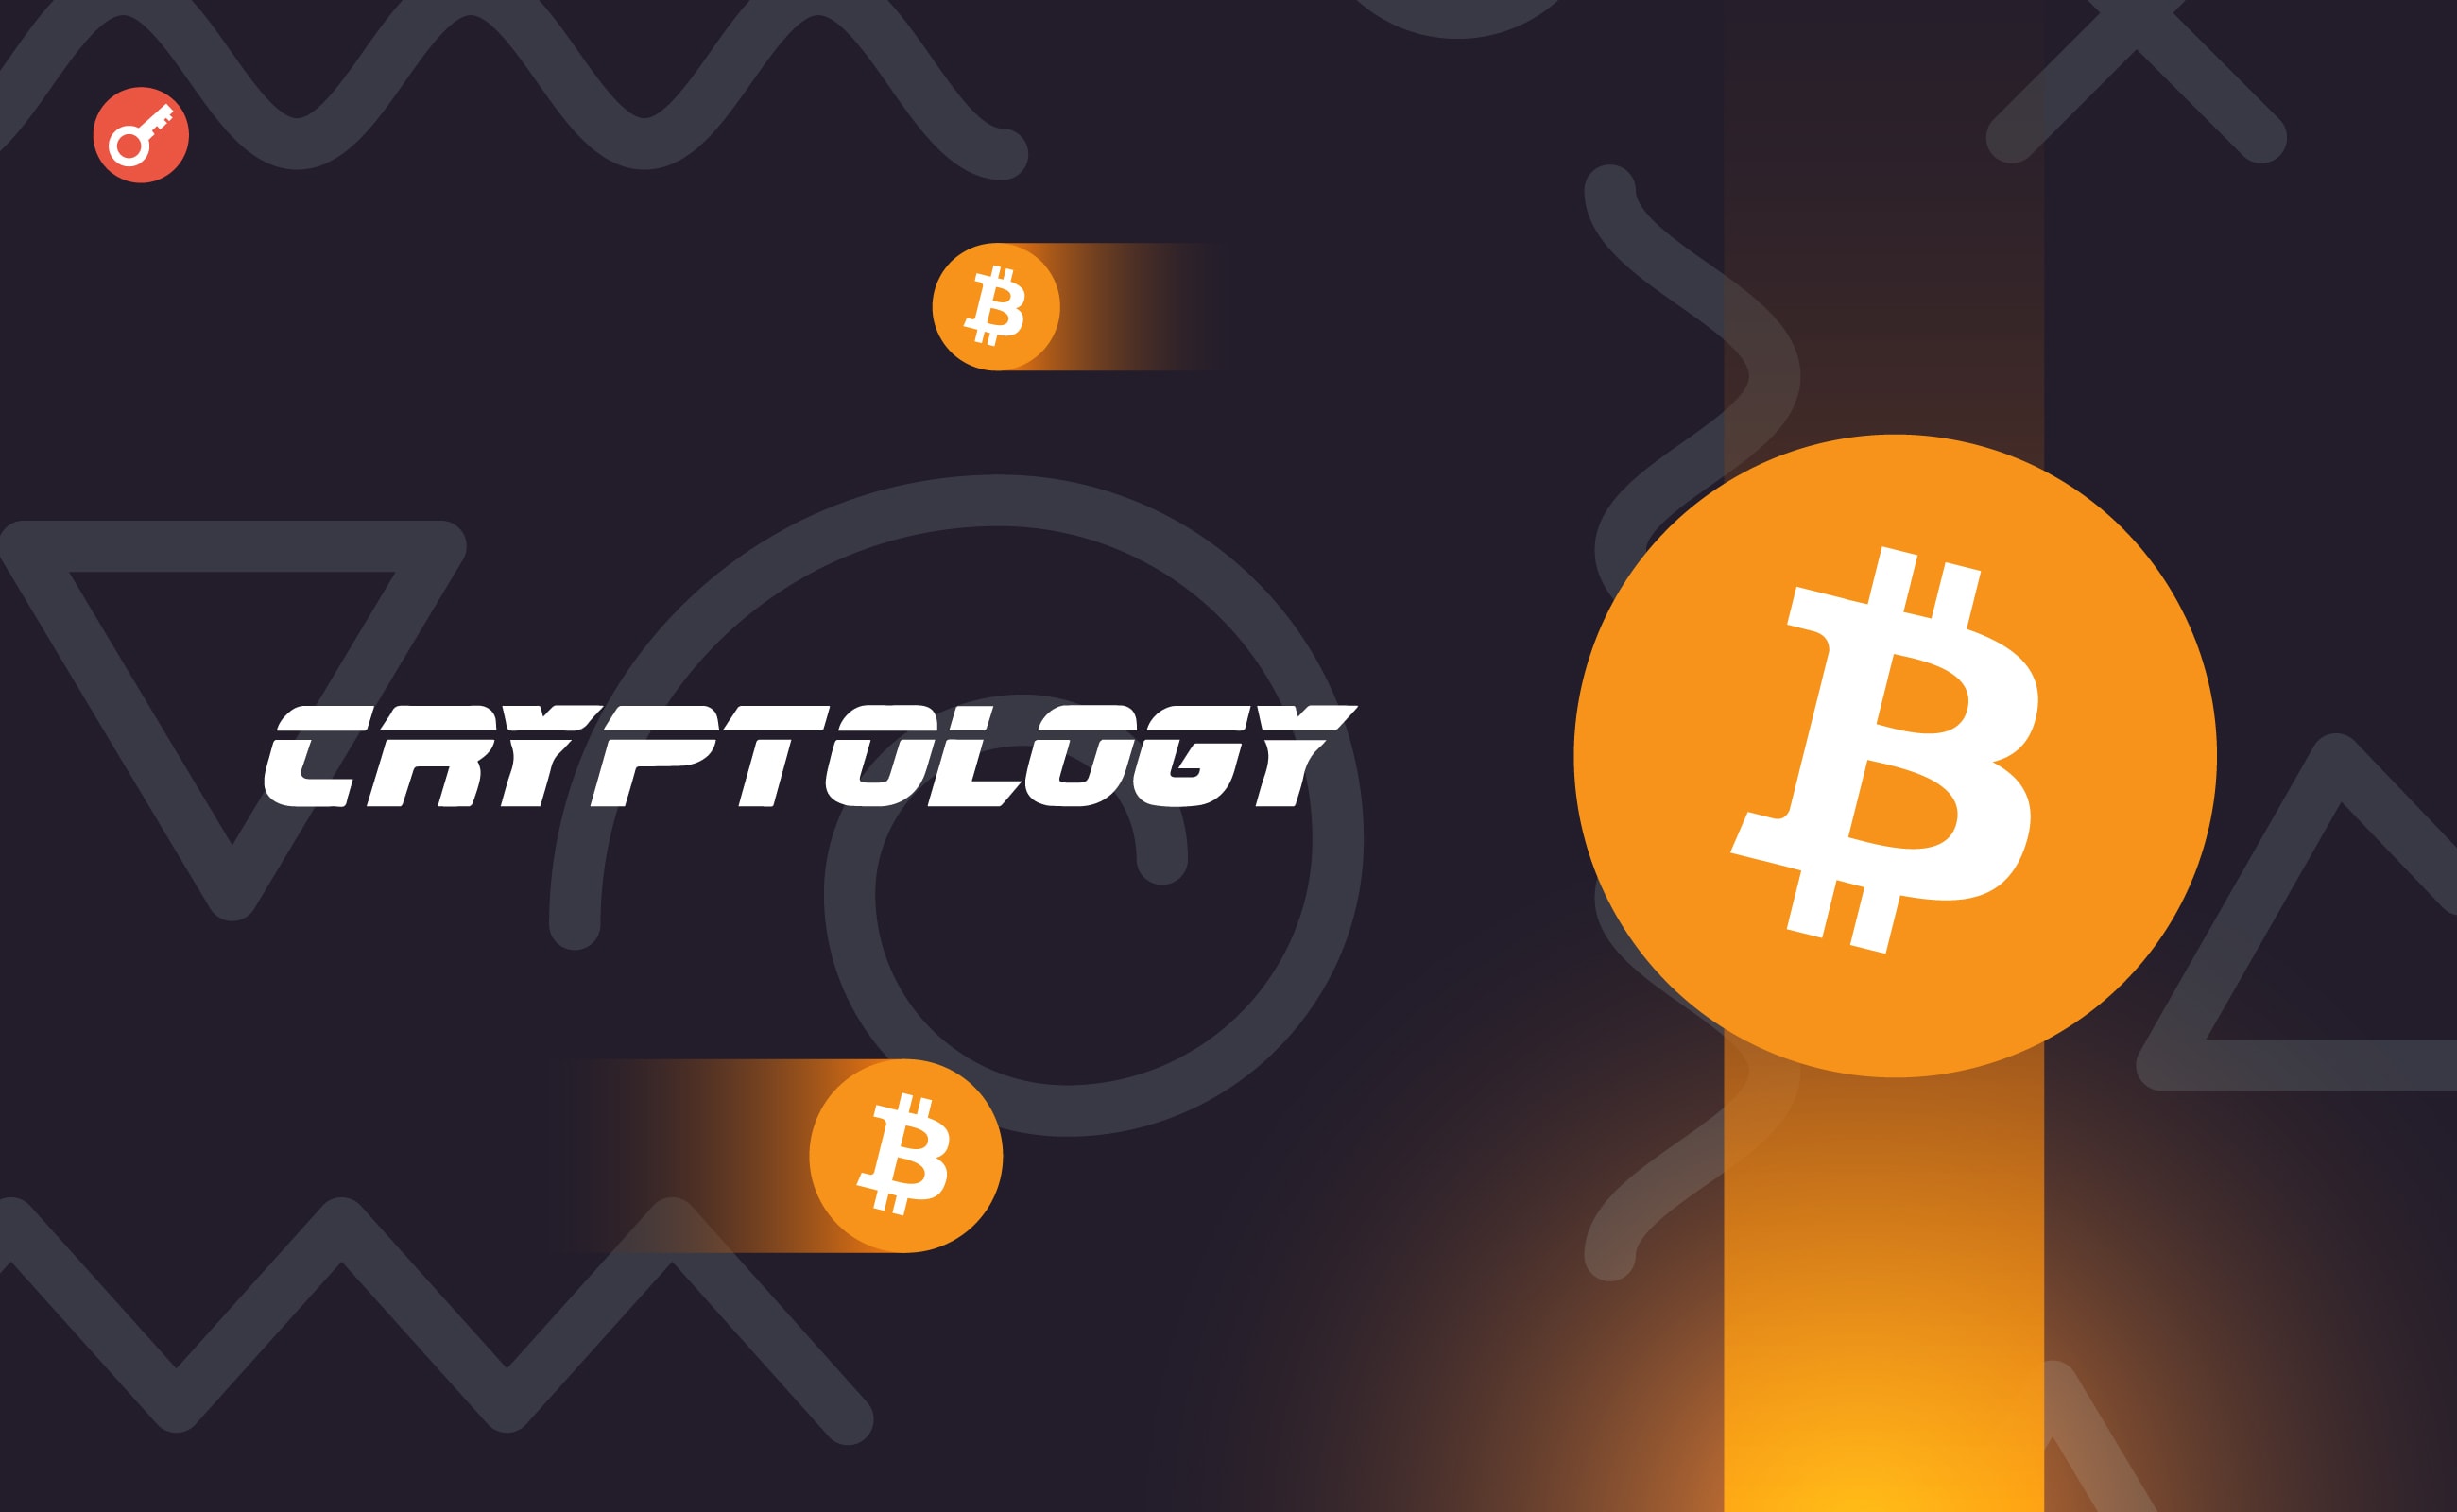 Эксперты Cryptology спрогнозировали движение цен биткоина и Ethereum. Заглавный коллаж новости.